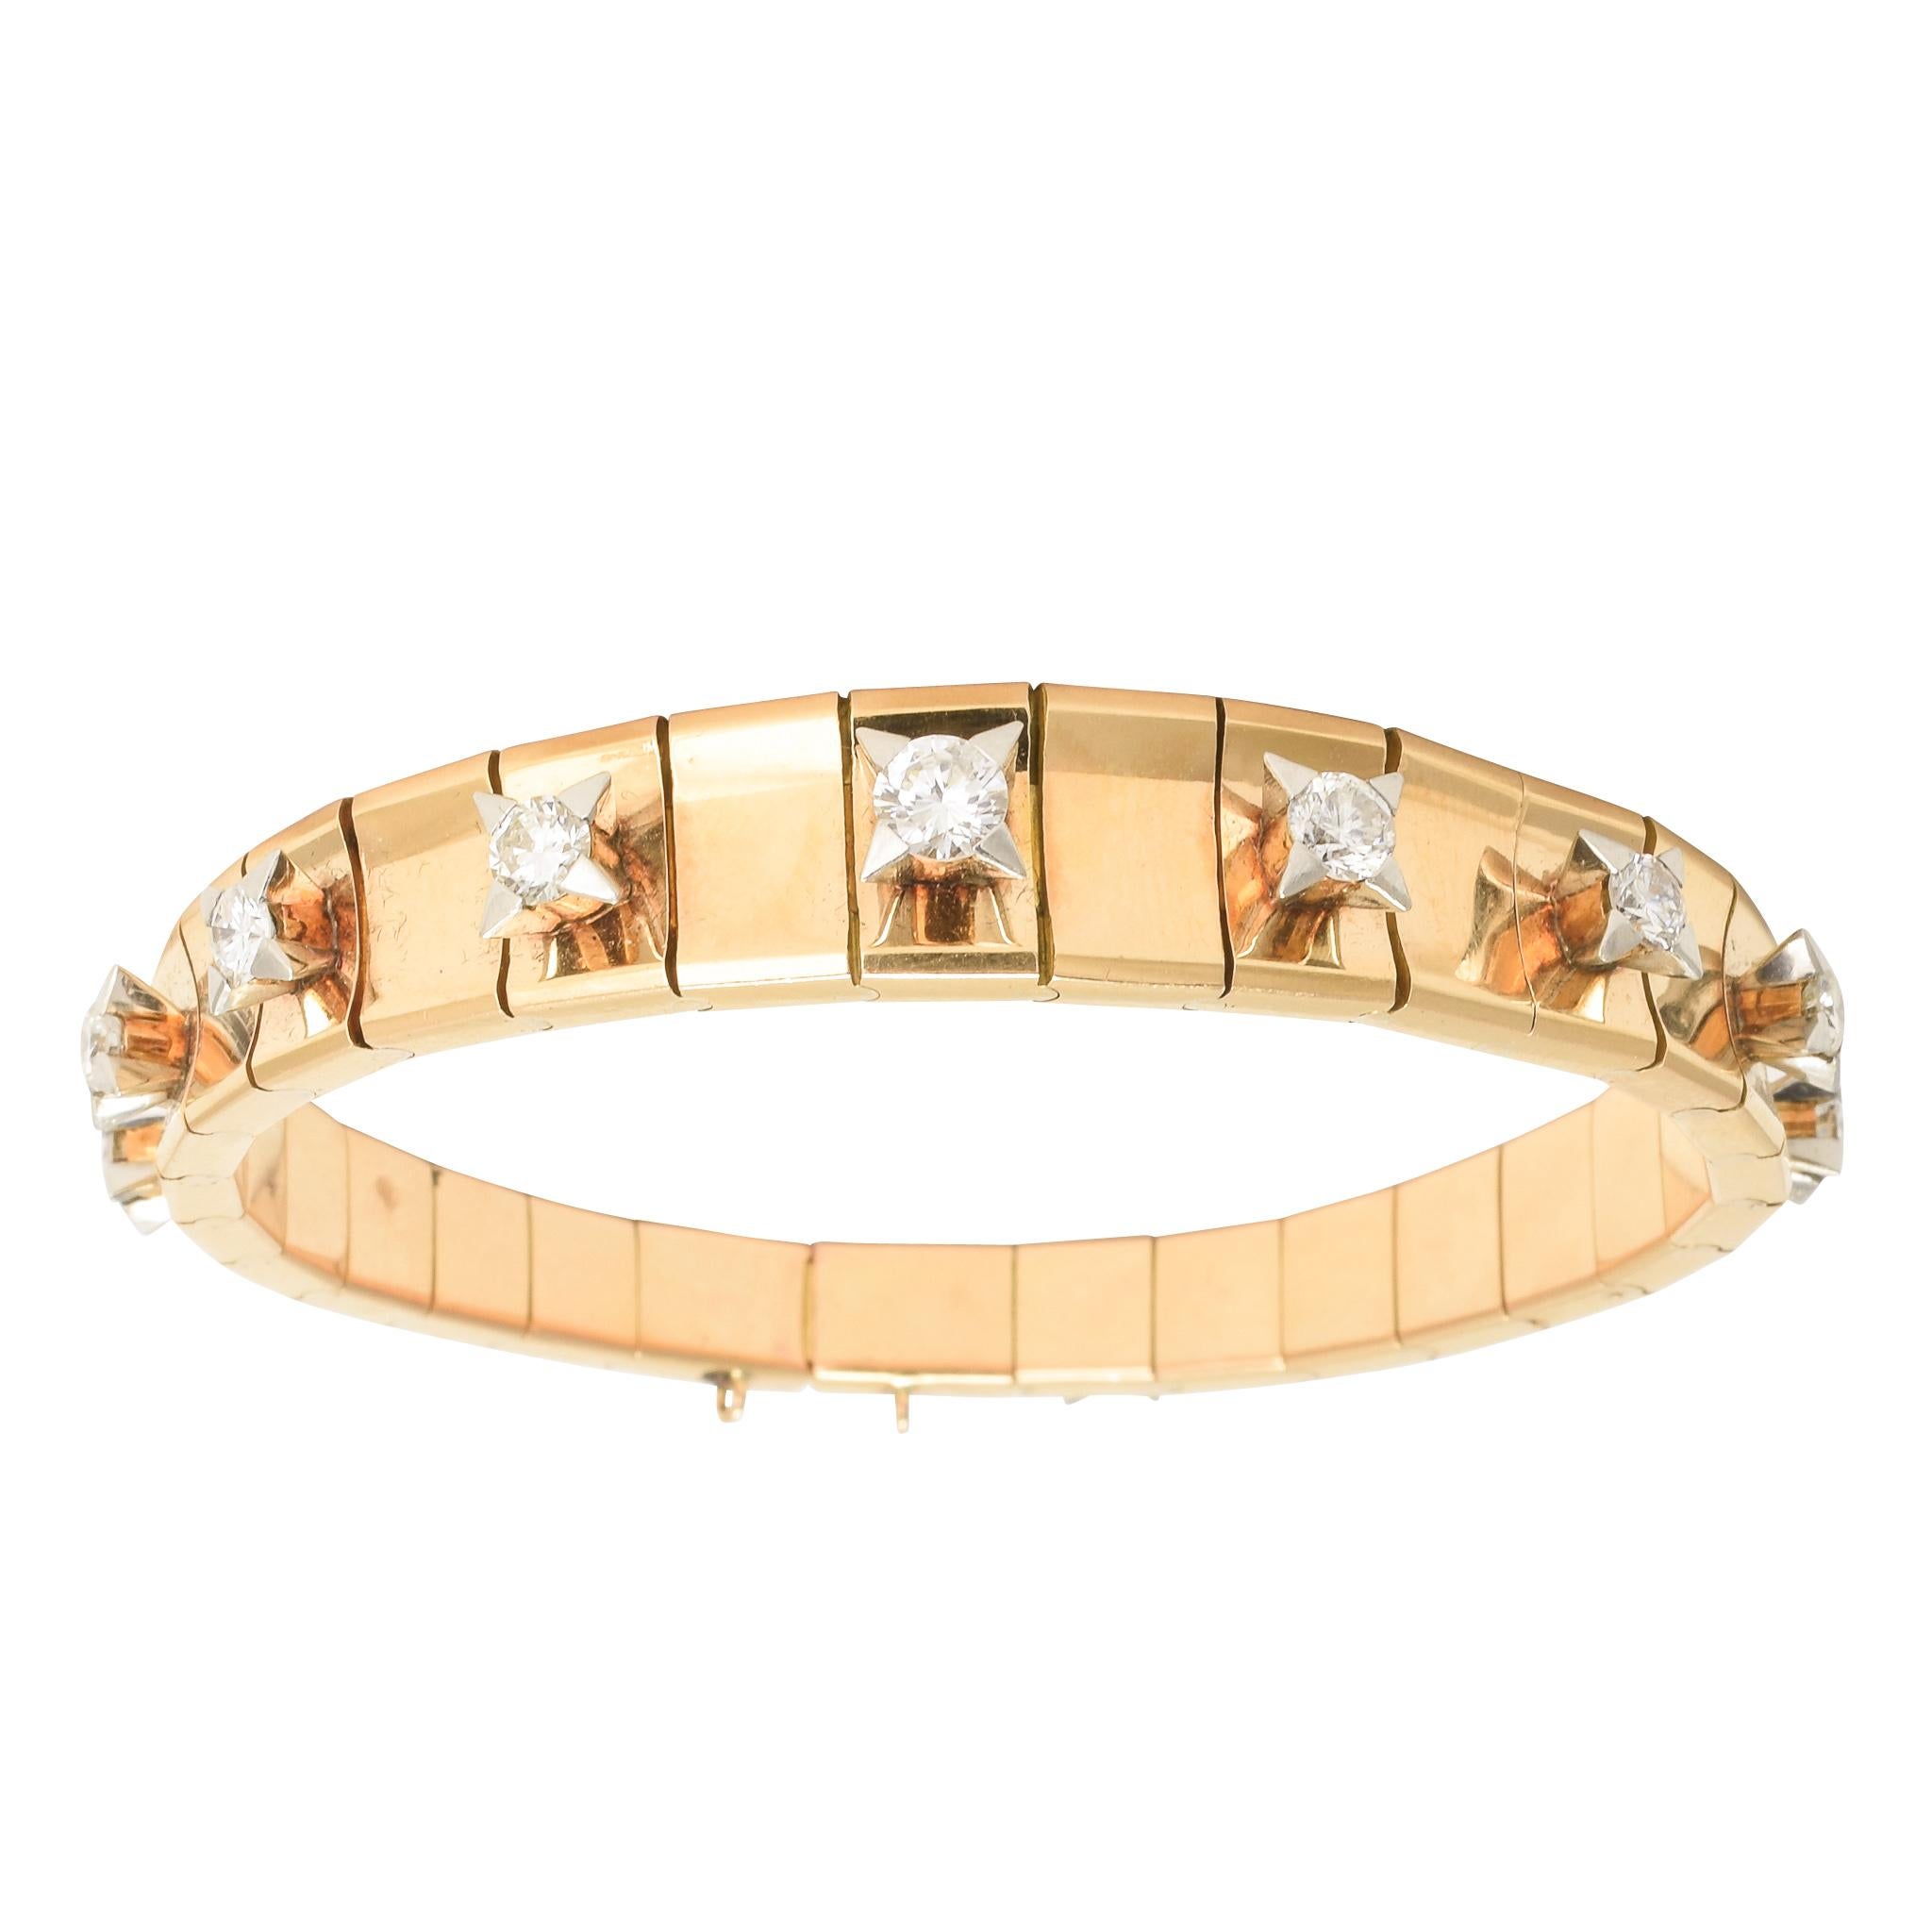 1950s Modernist Diamond Rose Gold Bracelet